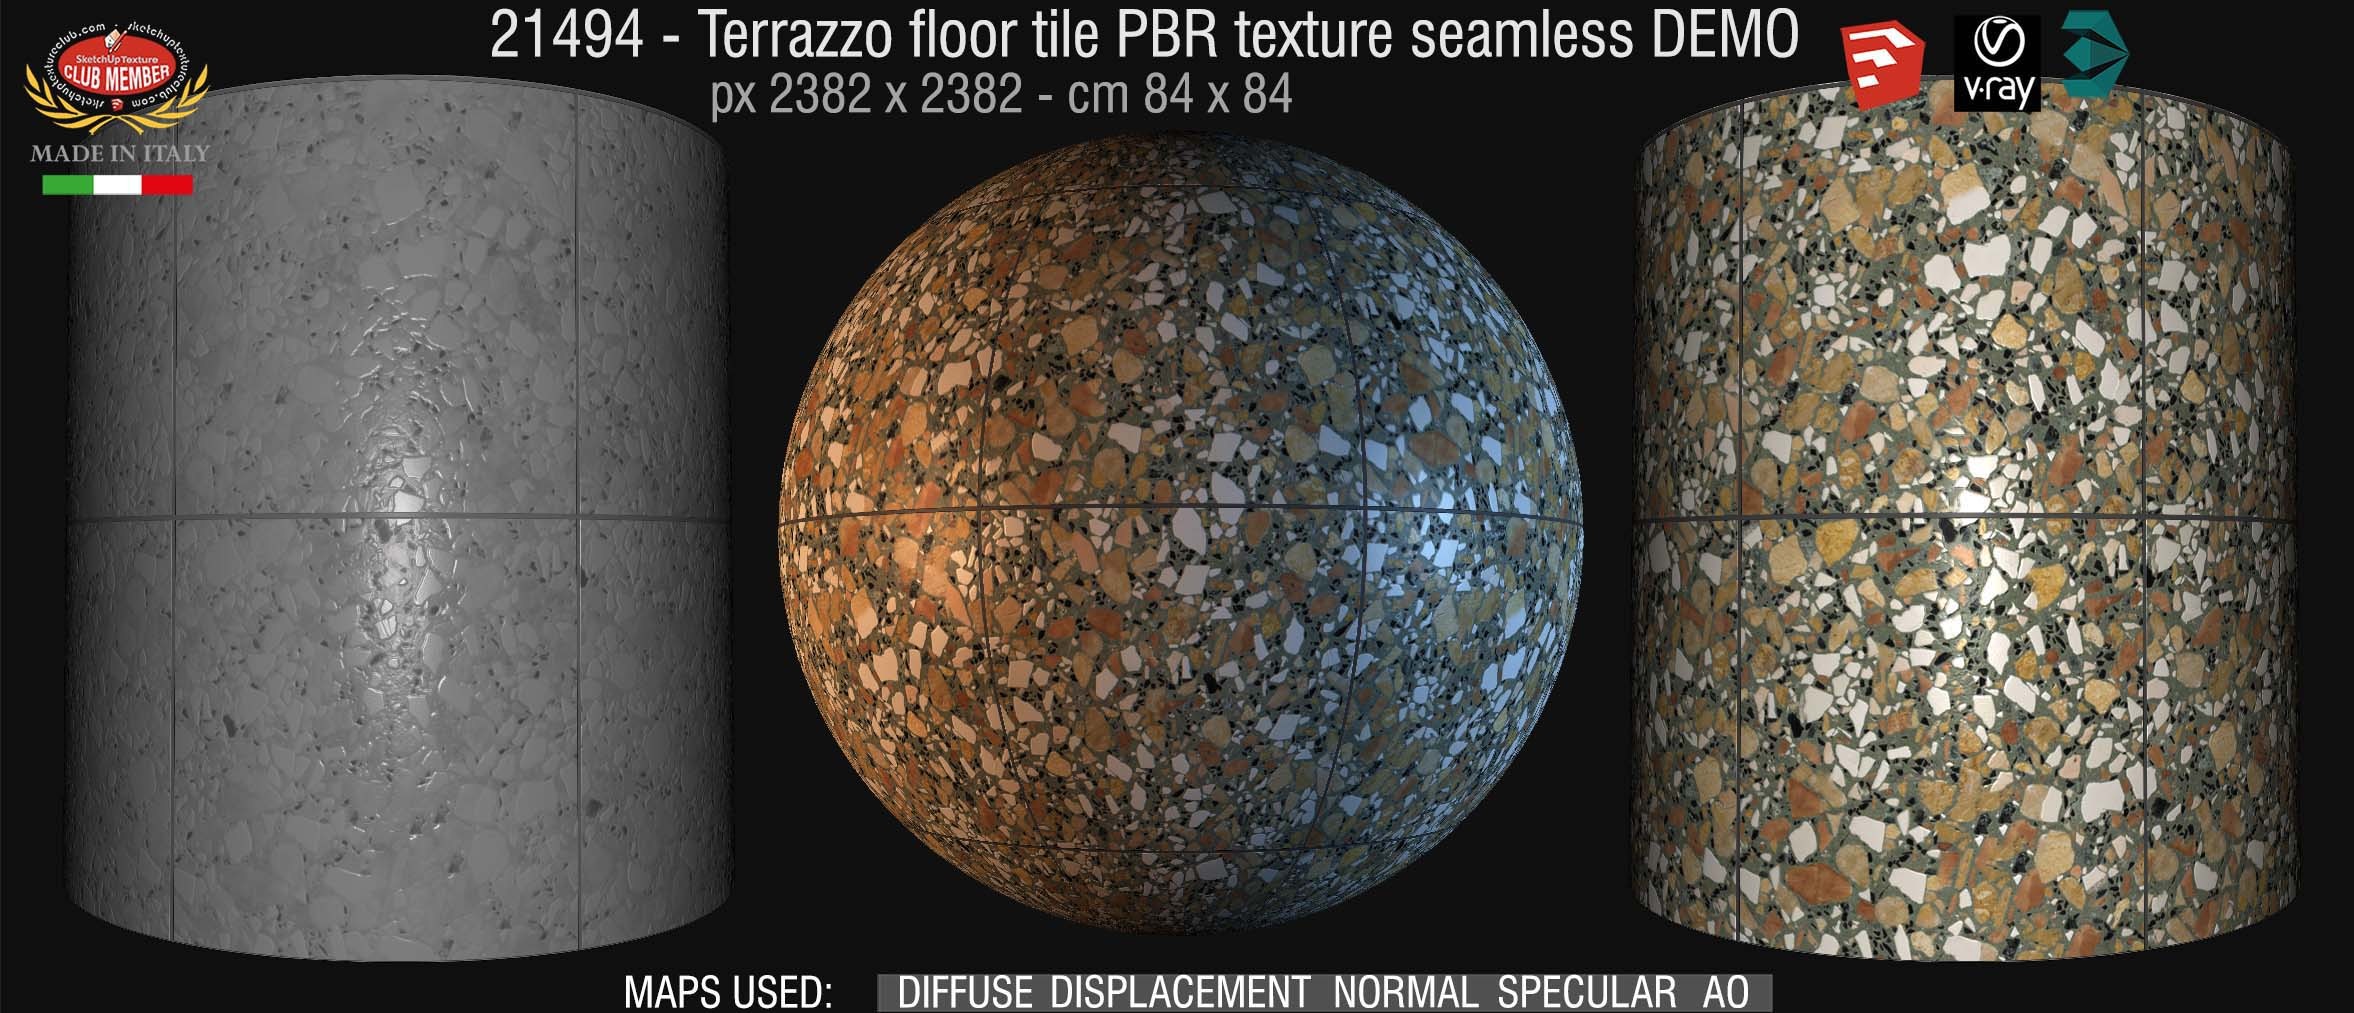 21494 terrazzo floor tile PBR texture seamless DEMO